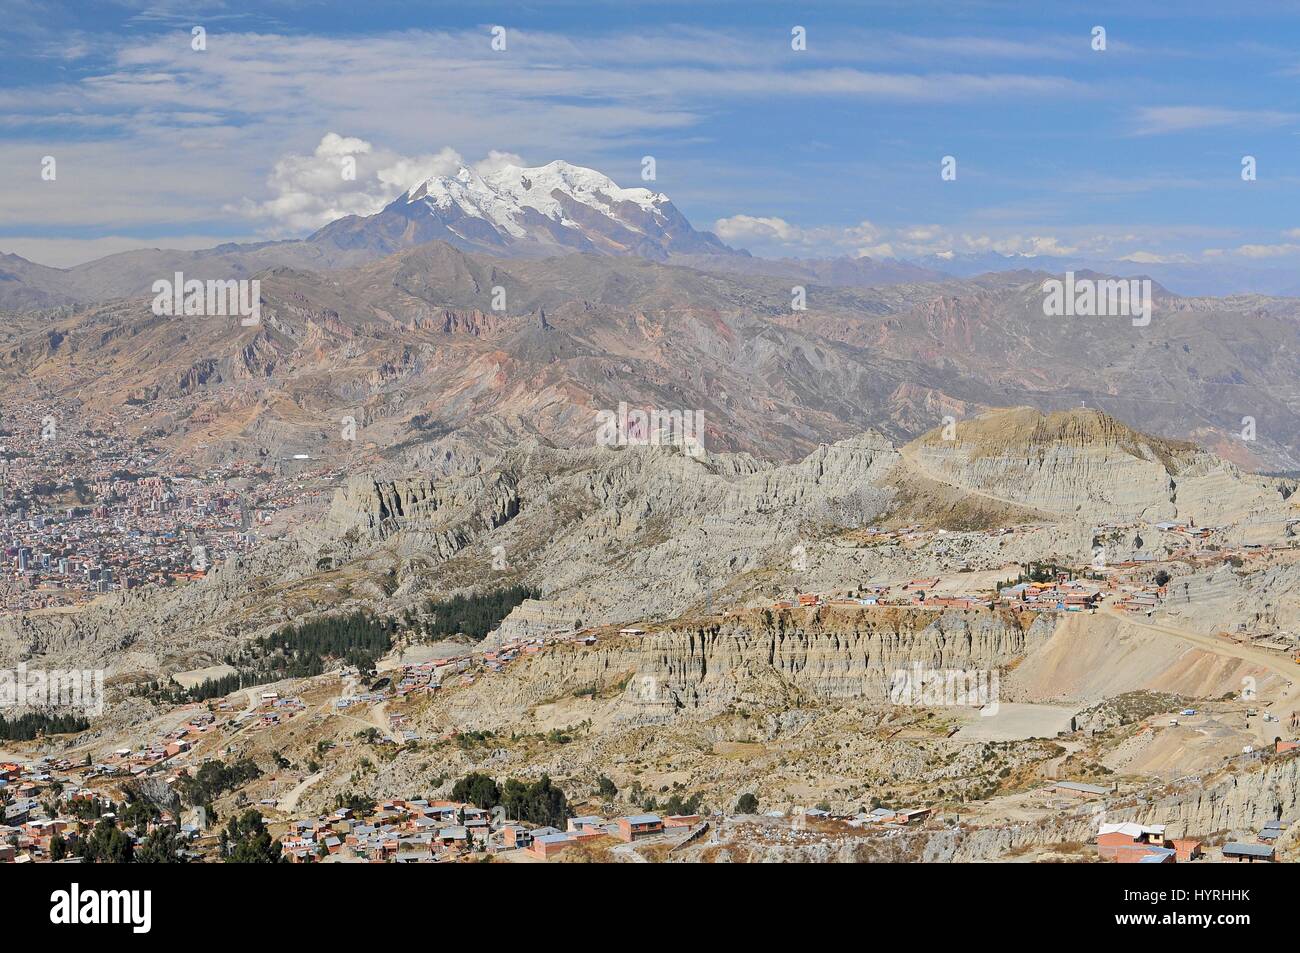 Bolivia, view of Cordillera Real from La Paz Stock Photo